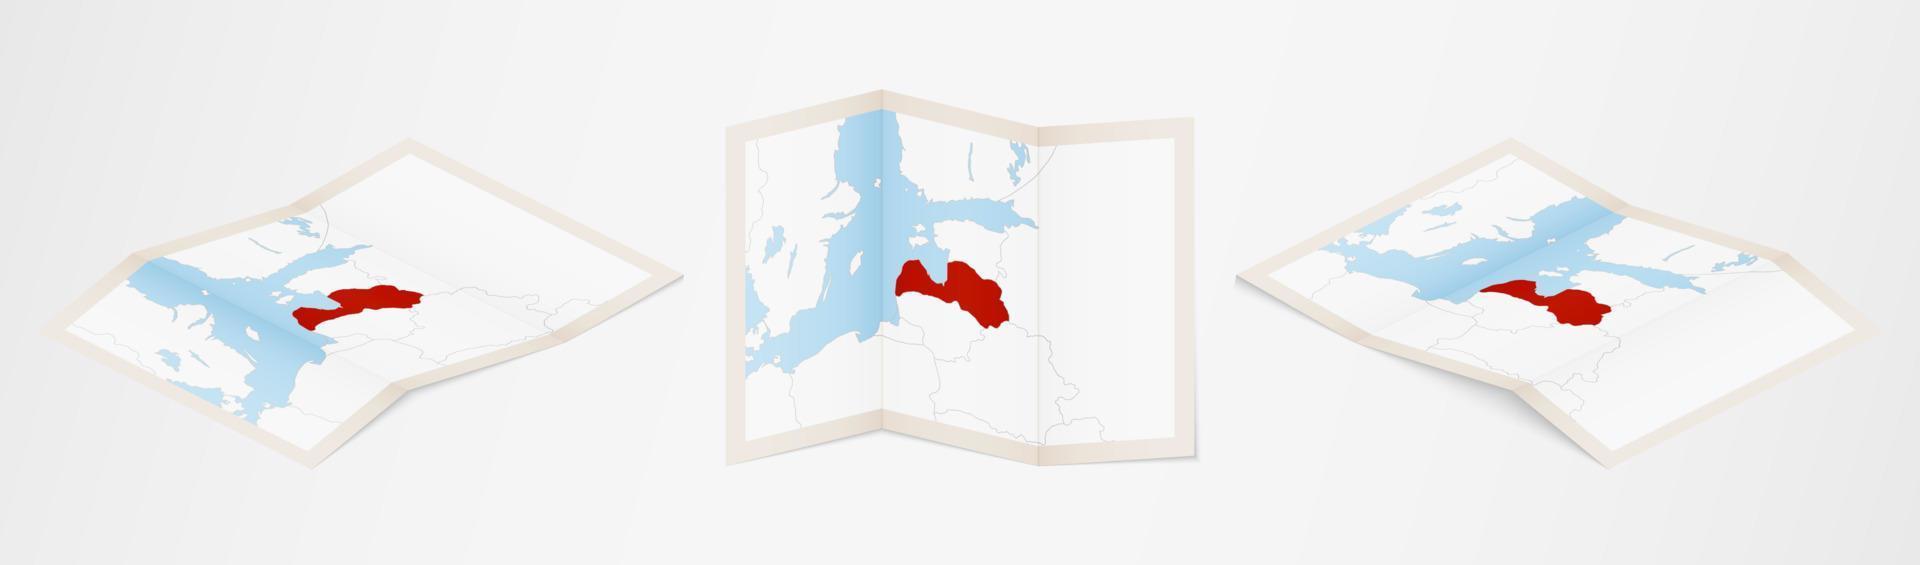 mapa plegado de letonia en tres versiones diferentes. vector